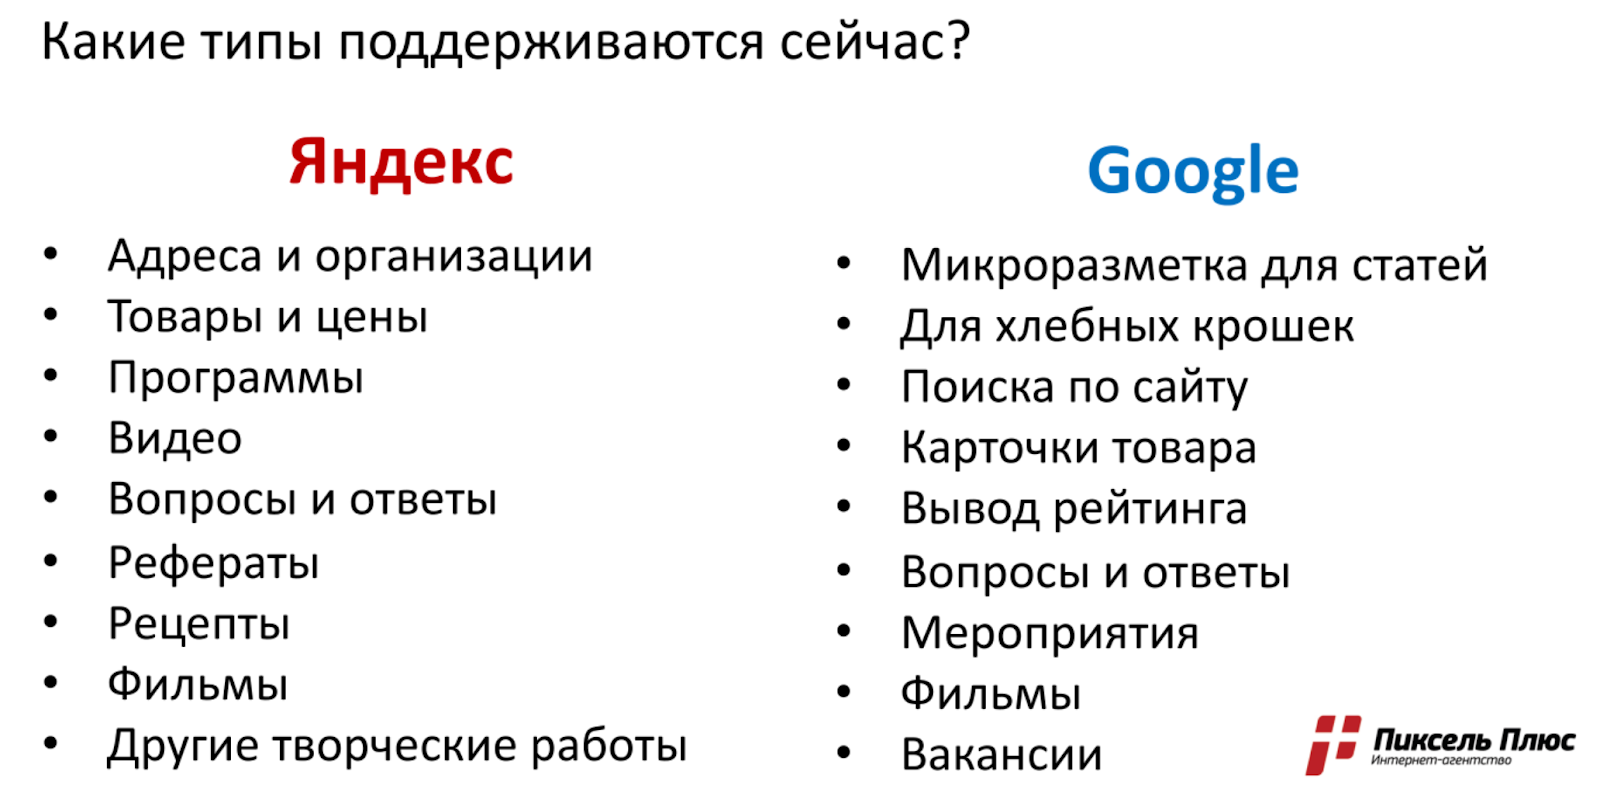 Разметка в Яндексе и Google